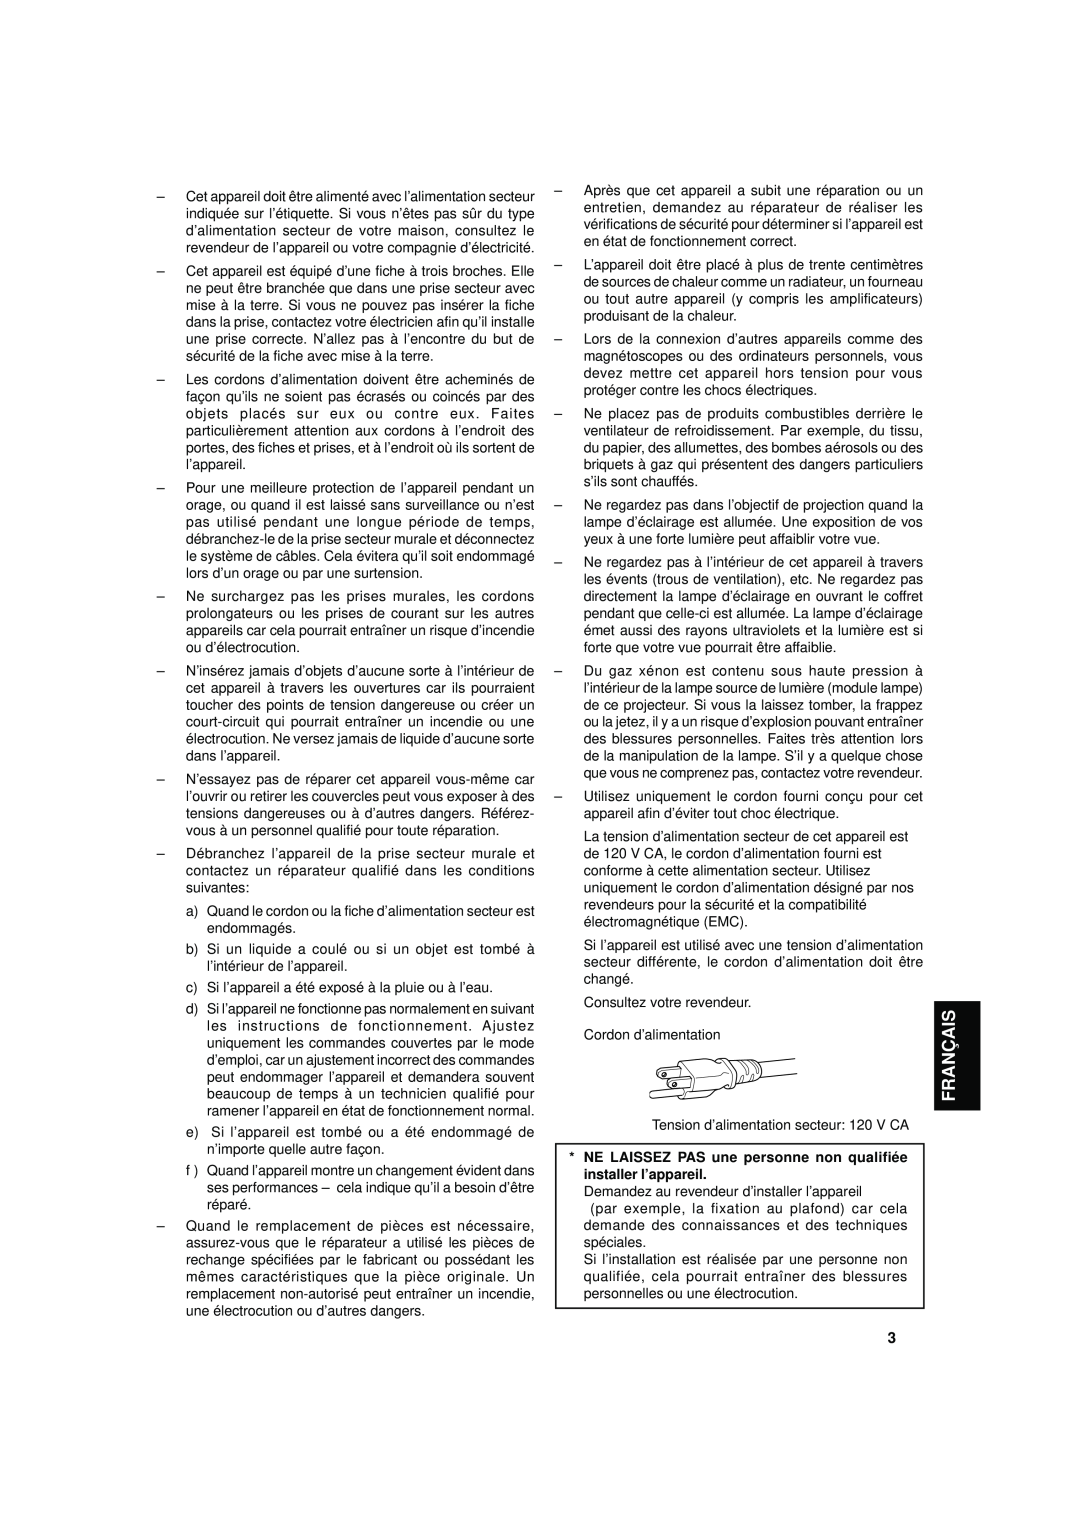 JVC DLA-S15U manual Français, NE LAISSEZ PAS une personne non qualifiée installer l’appareil 